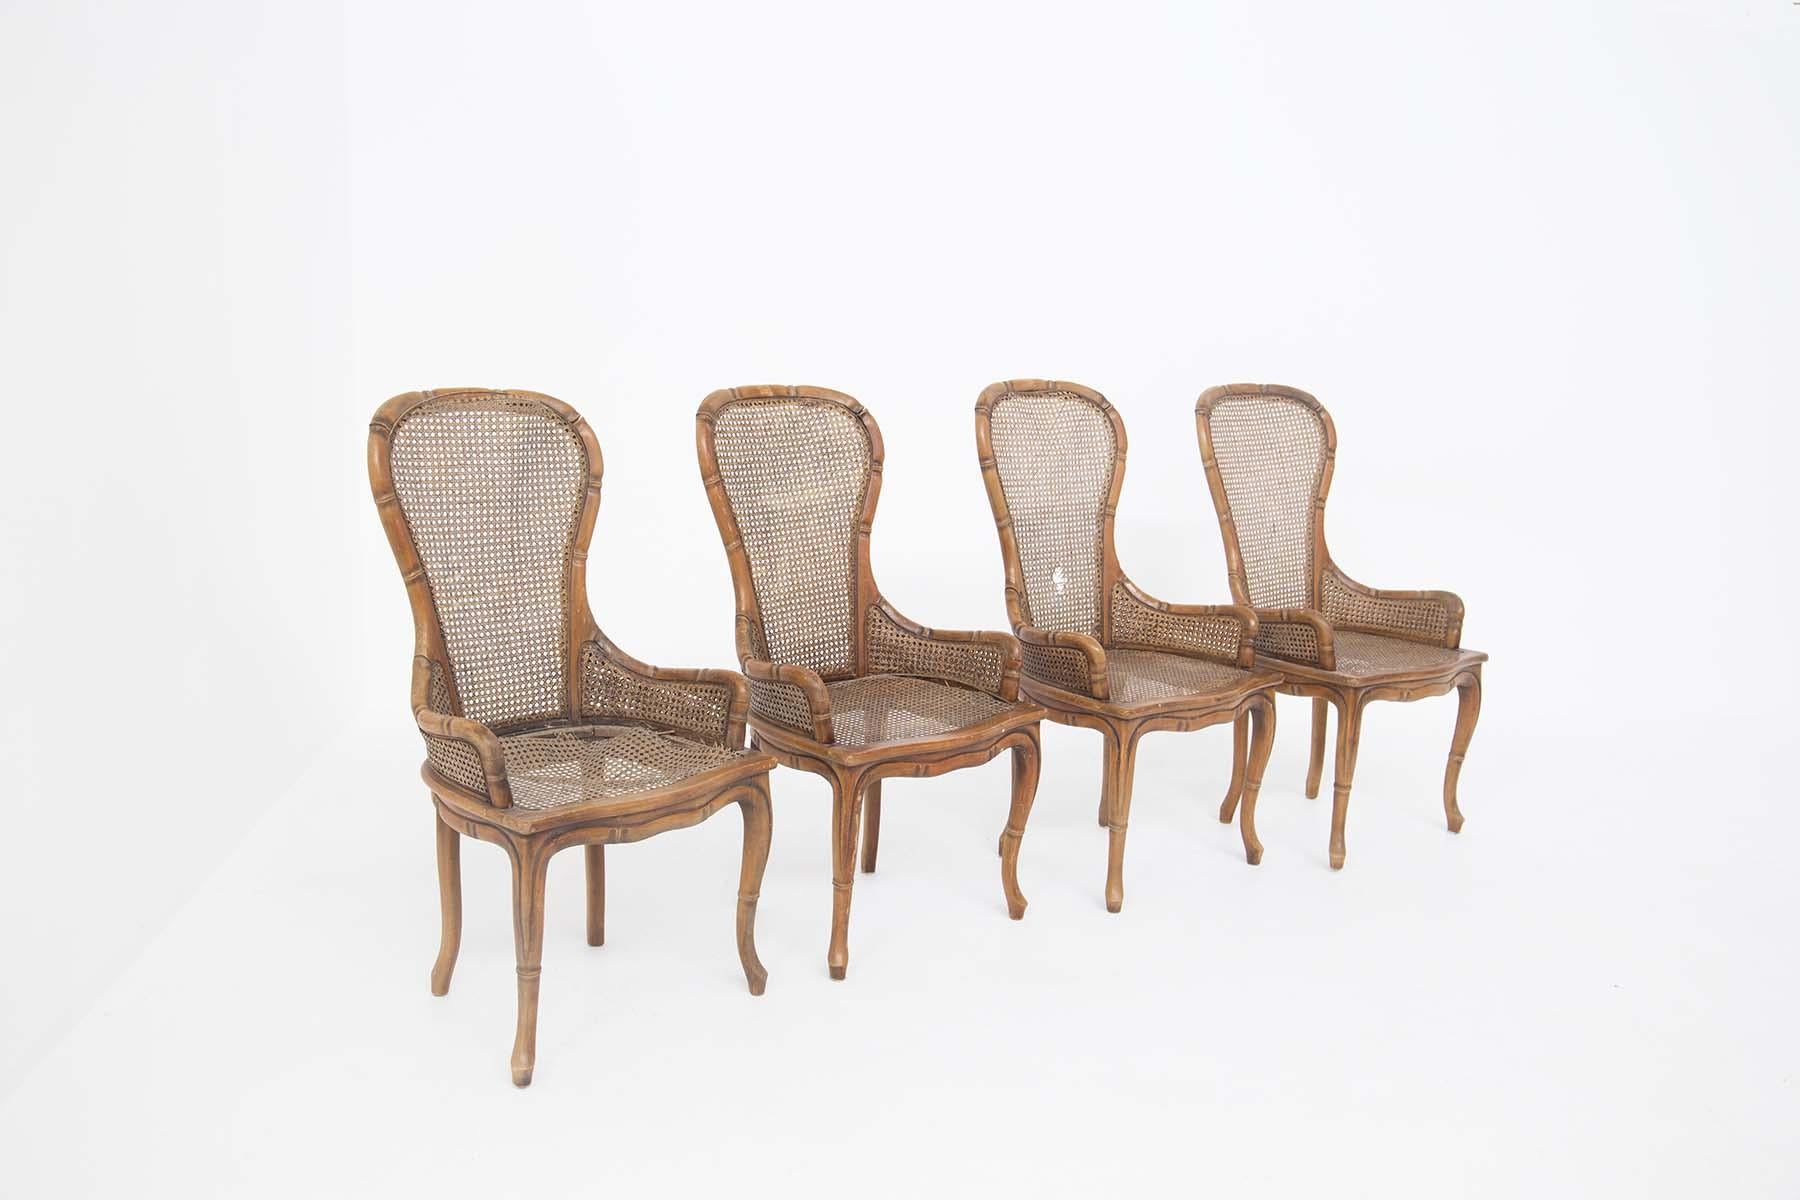 Ensemble de quatre chaises en faux bambou réalisées par Giorgetti dans les années 1980. L'assise et le dossier sont en rotin. La structure est en bois mais grâce à sa technique de réalisation similaire à une canne de bambou, le fauteuil semble